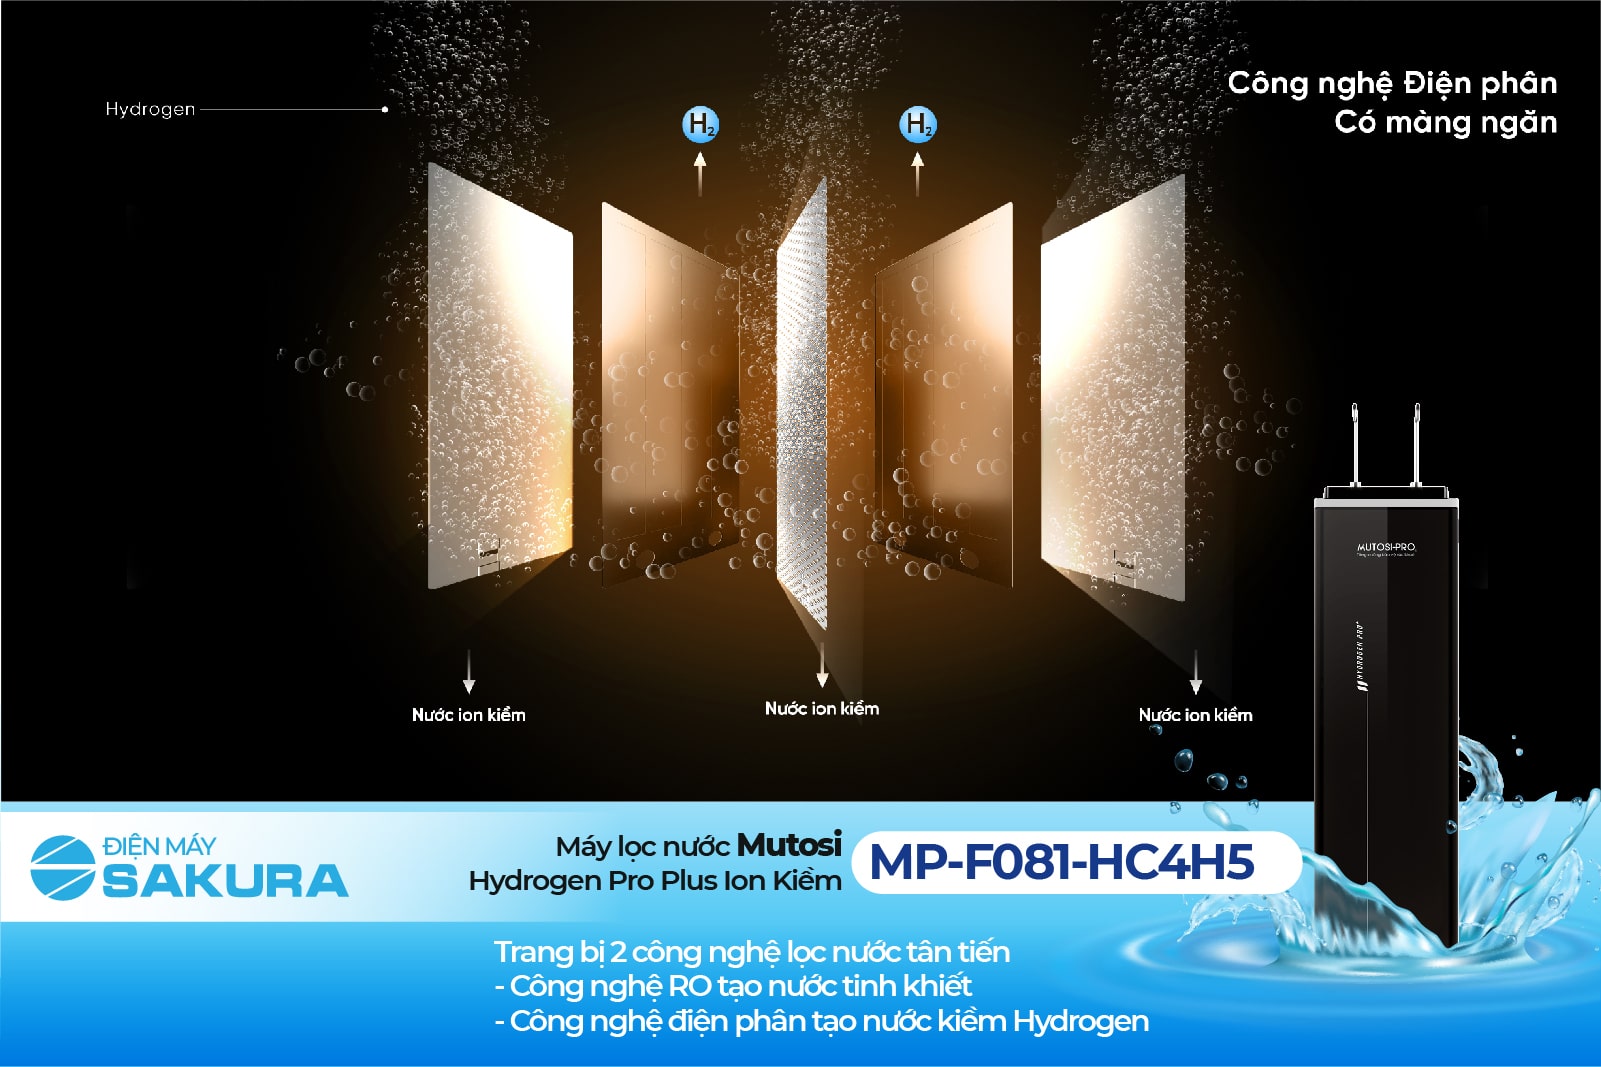 Công nghệ tạo nước hiện đại Mutosi-MP-F081-HC4H5